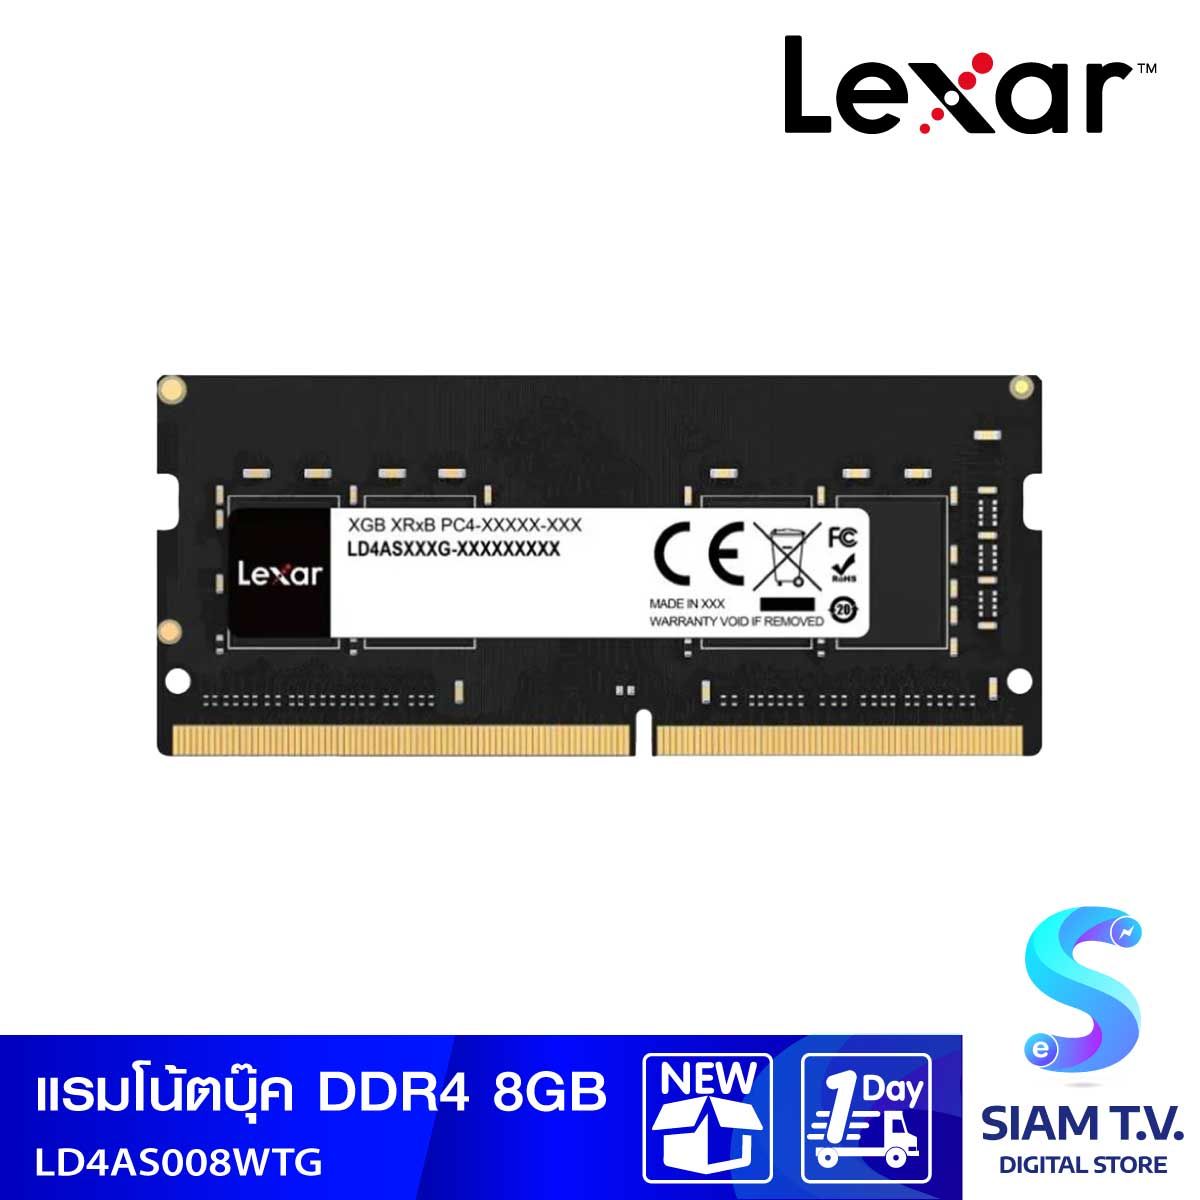 LAPTOP MEMORY RAMX DDR4 3200 8GB